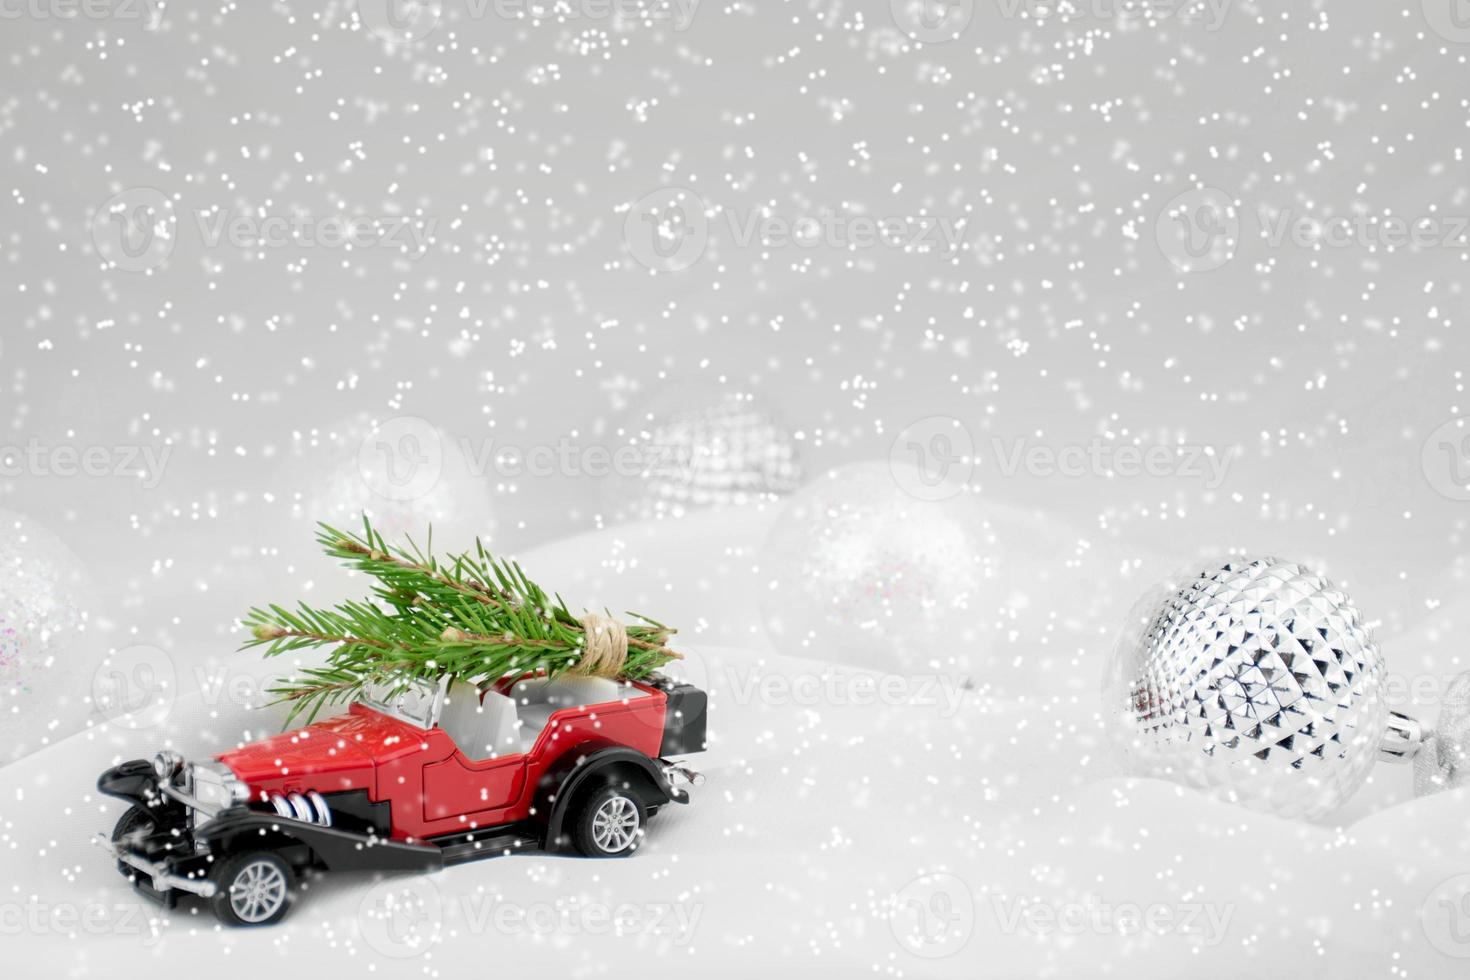 una tarjeta de Navidad o un cartel. coche rojo, nieve, regalos, purpurina. fondo de bokeh fabuloso borroso foto